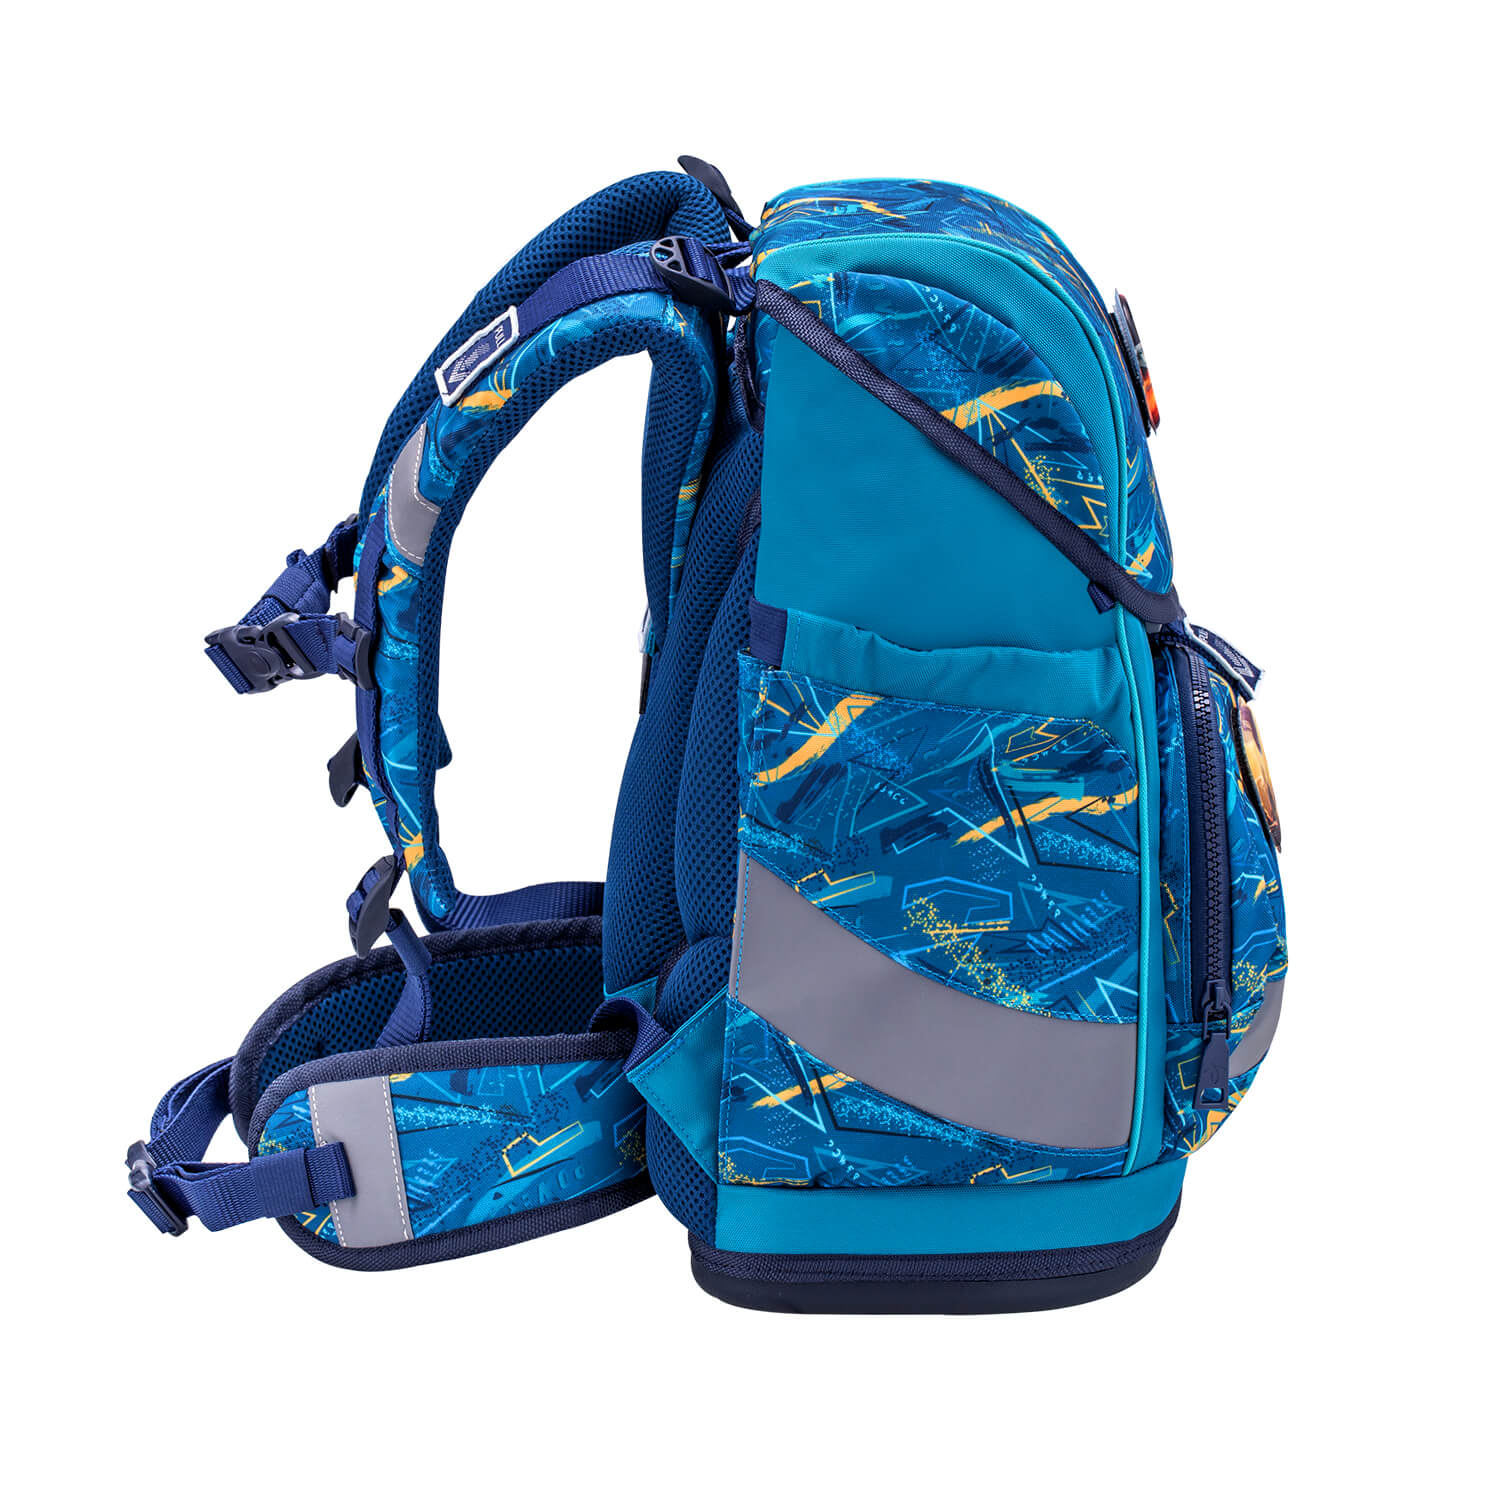 Smarty Plus Baltic Schoolbag set 5pcs.